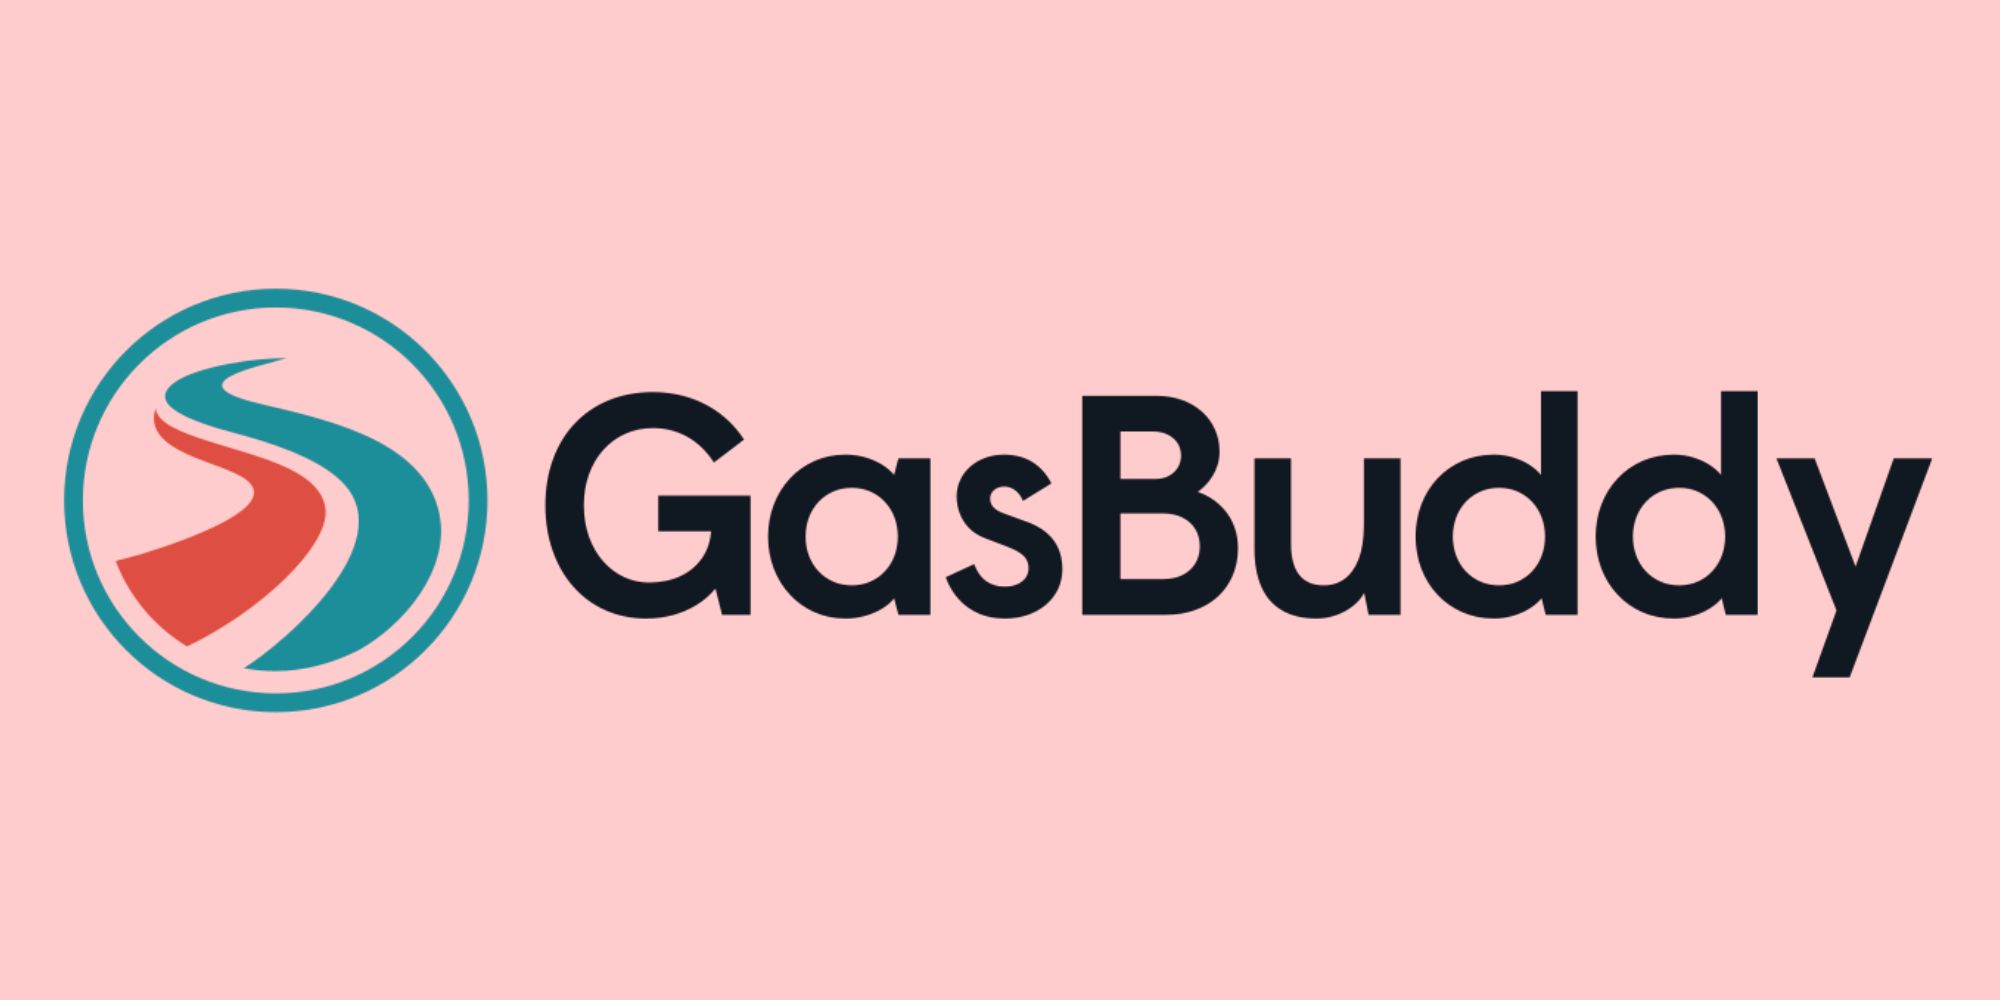 GasBuddy logo